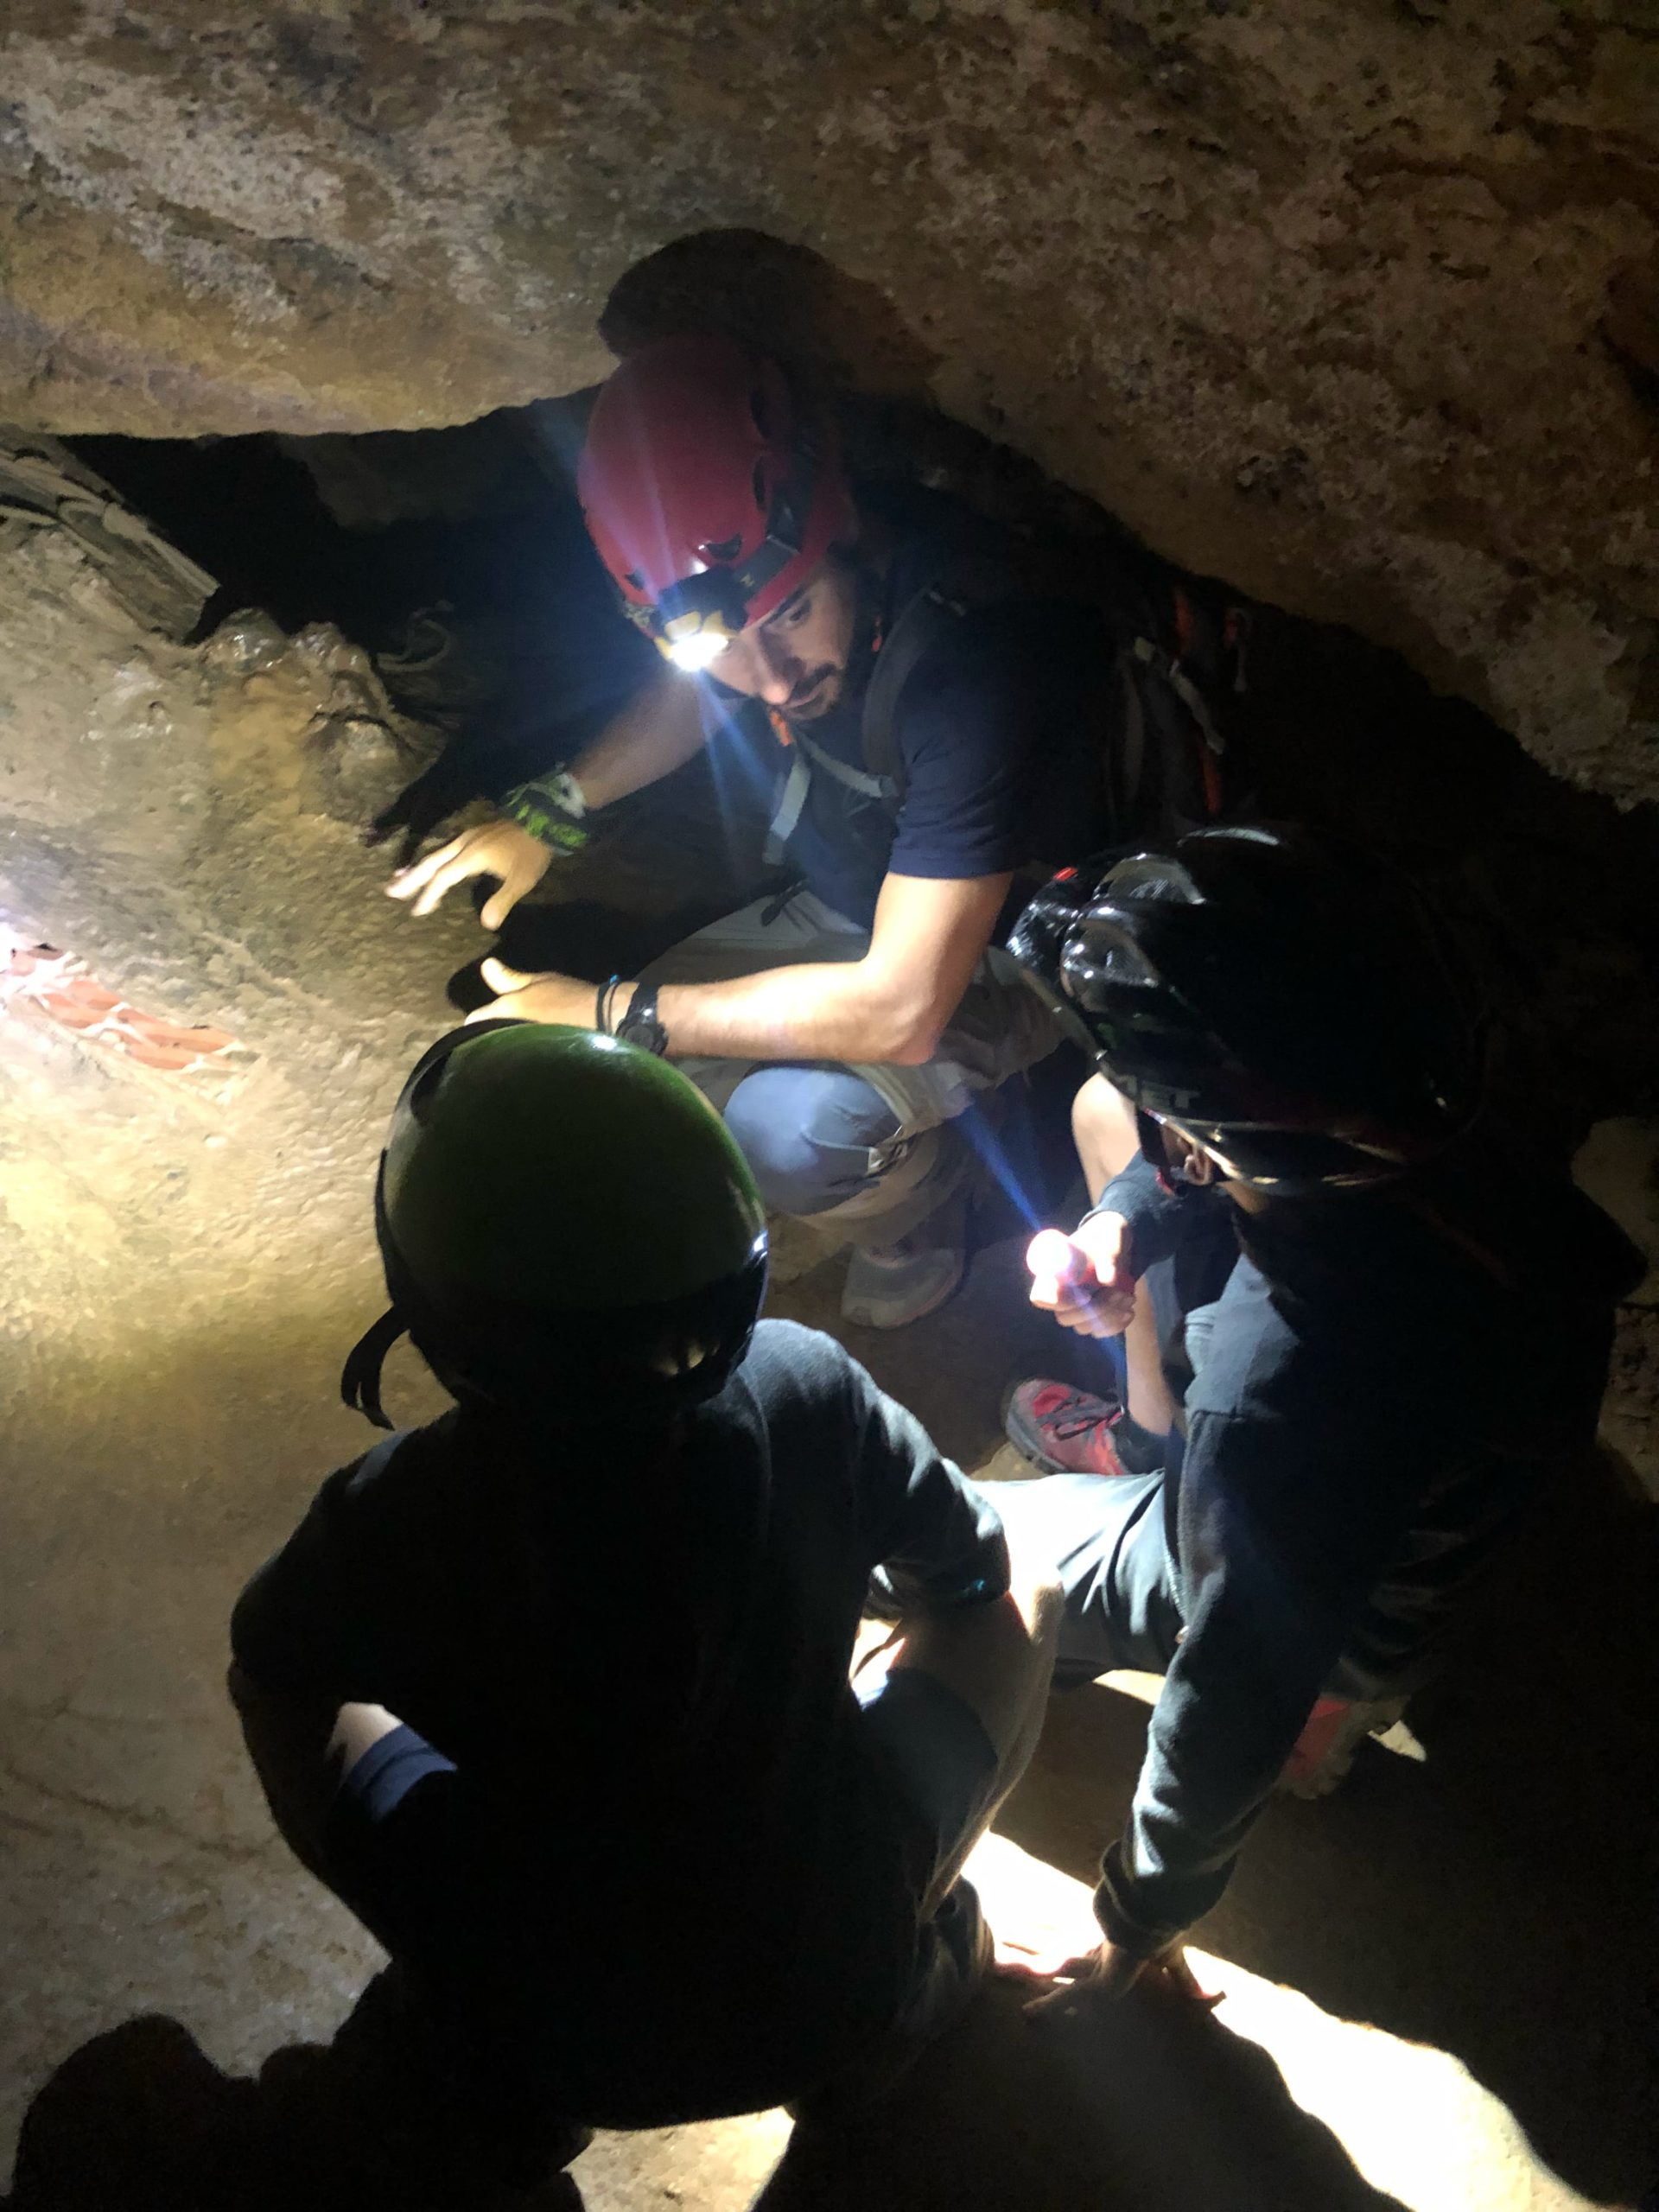 Guia treballant a cova amb nens - Natura Activa - Naturactiva